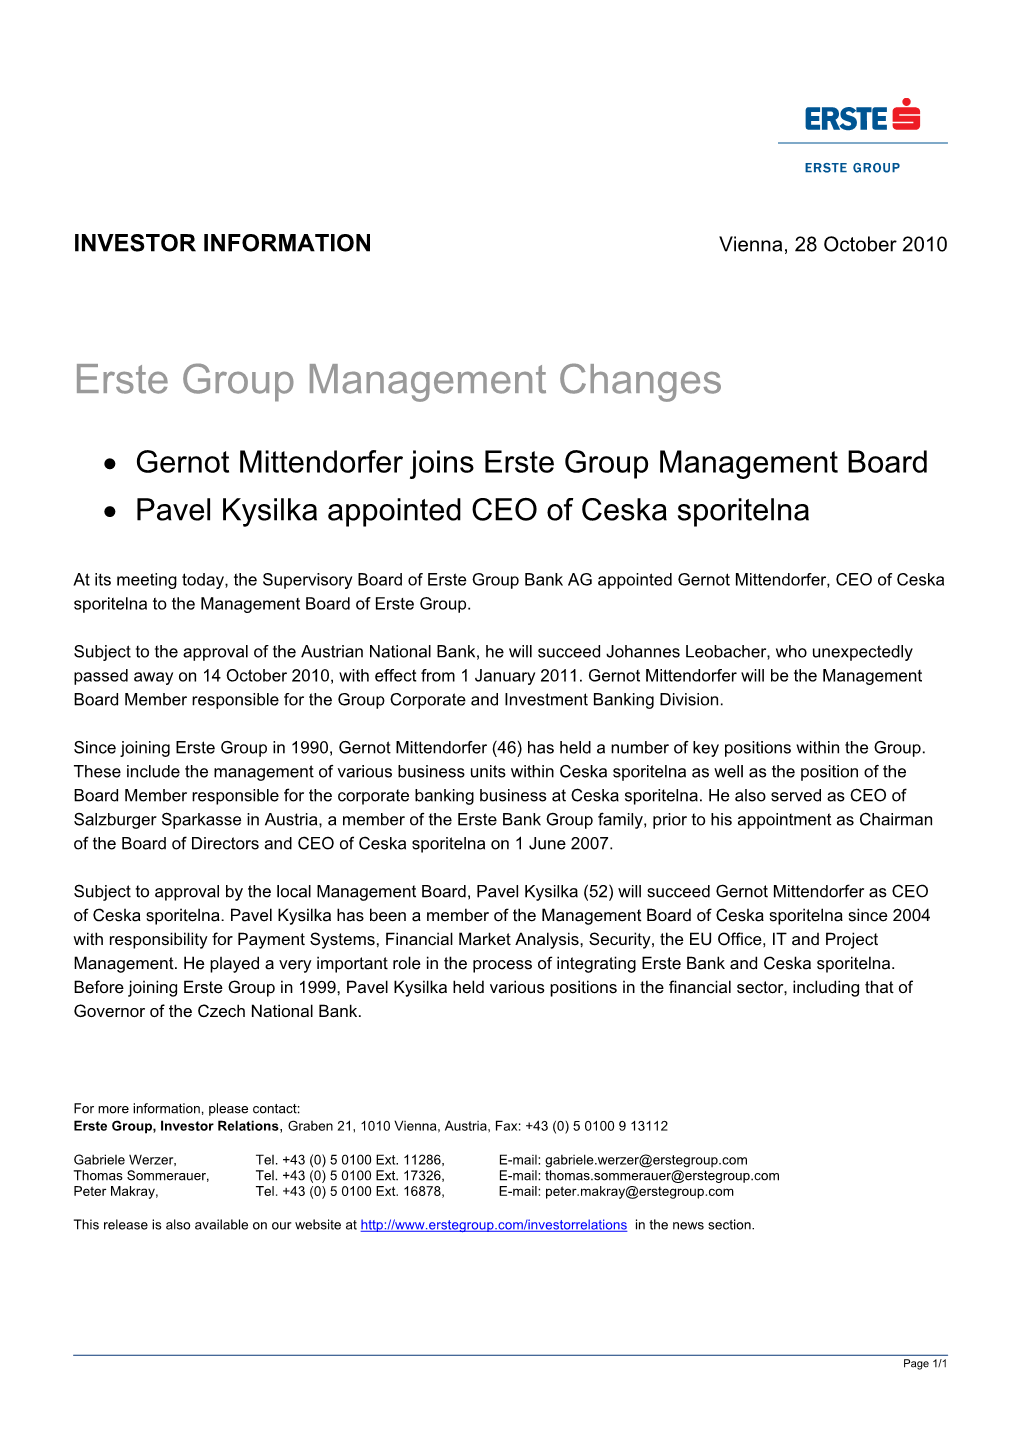 Erste Group Management Changes